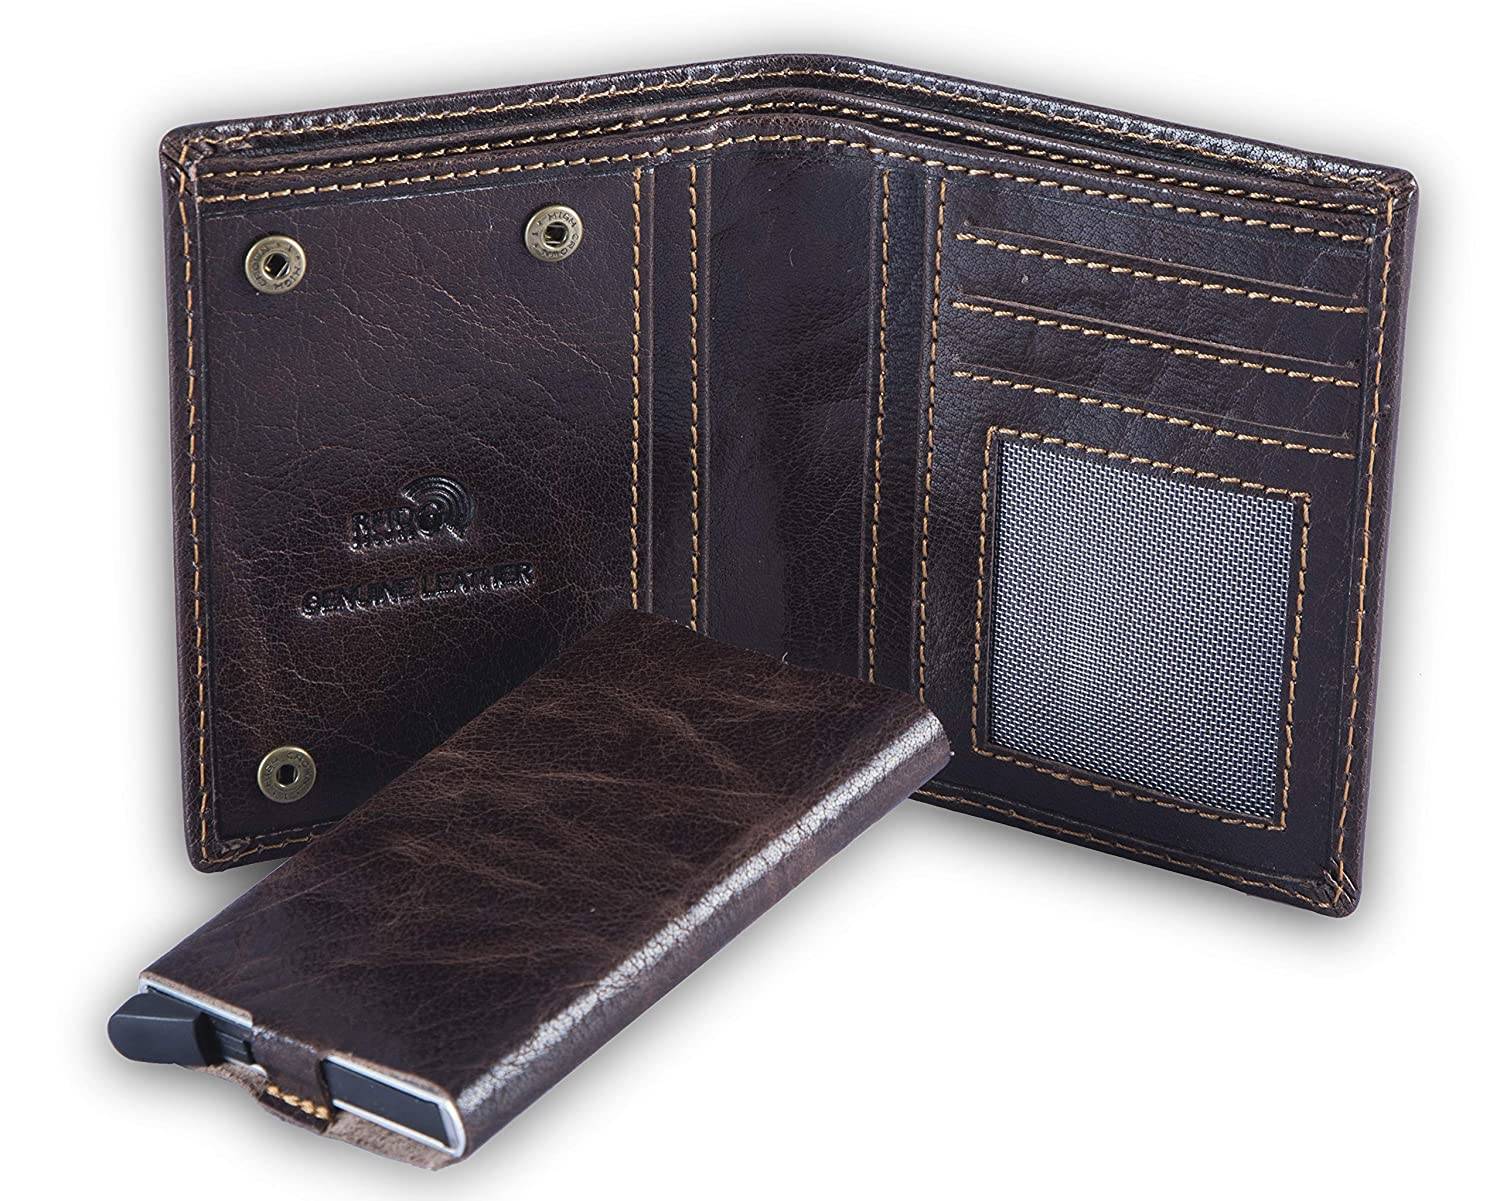 Coin Holder Wallet Premium VISCONTI Blue  Black Cardholder Wallet Leather Wallets for Men Slim Leather Wallet with RFID VSL33